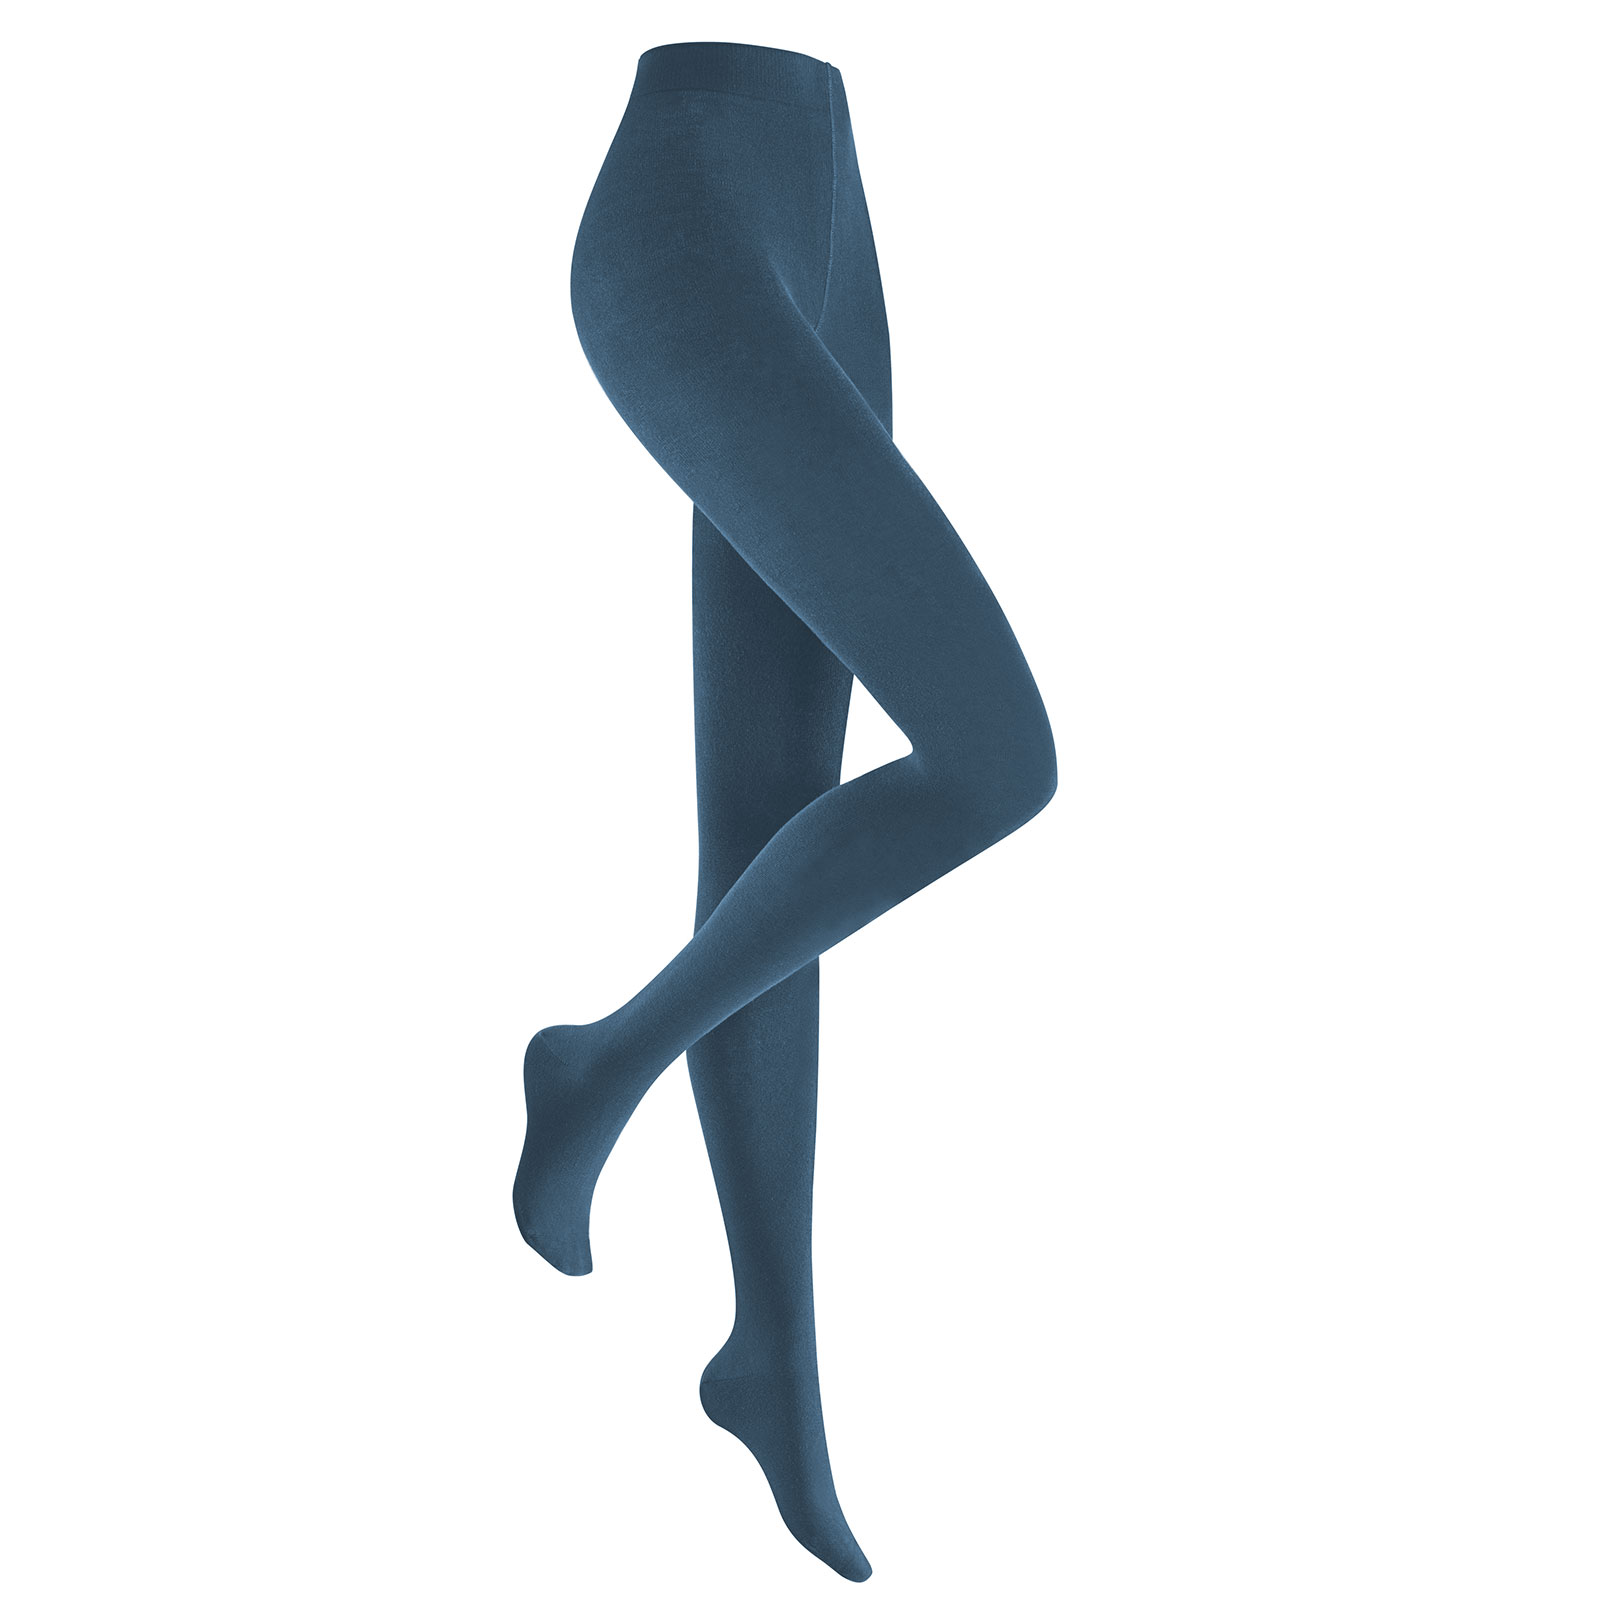 HUDSON Damen RELAX FINE  -  38/40 - Blickdichte Strumpfhose / Strickstrumpfhose mit hohem Baumwollanteil - Blue moon (Blau)